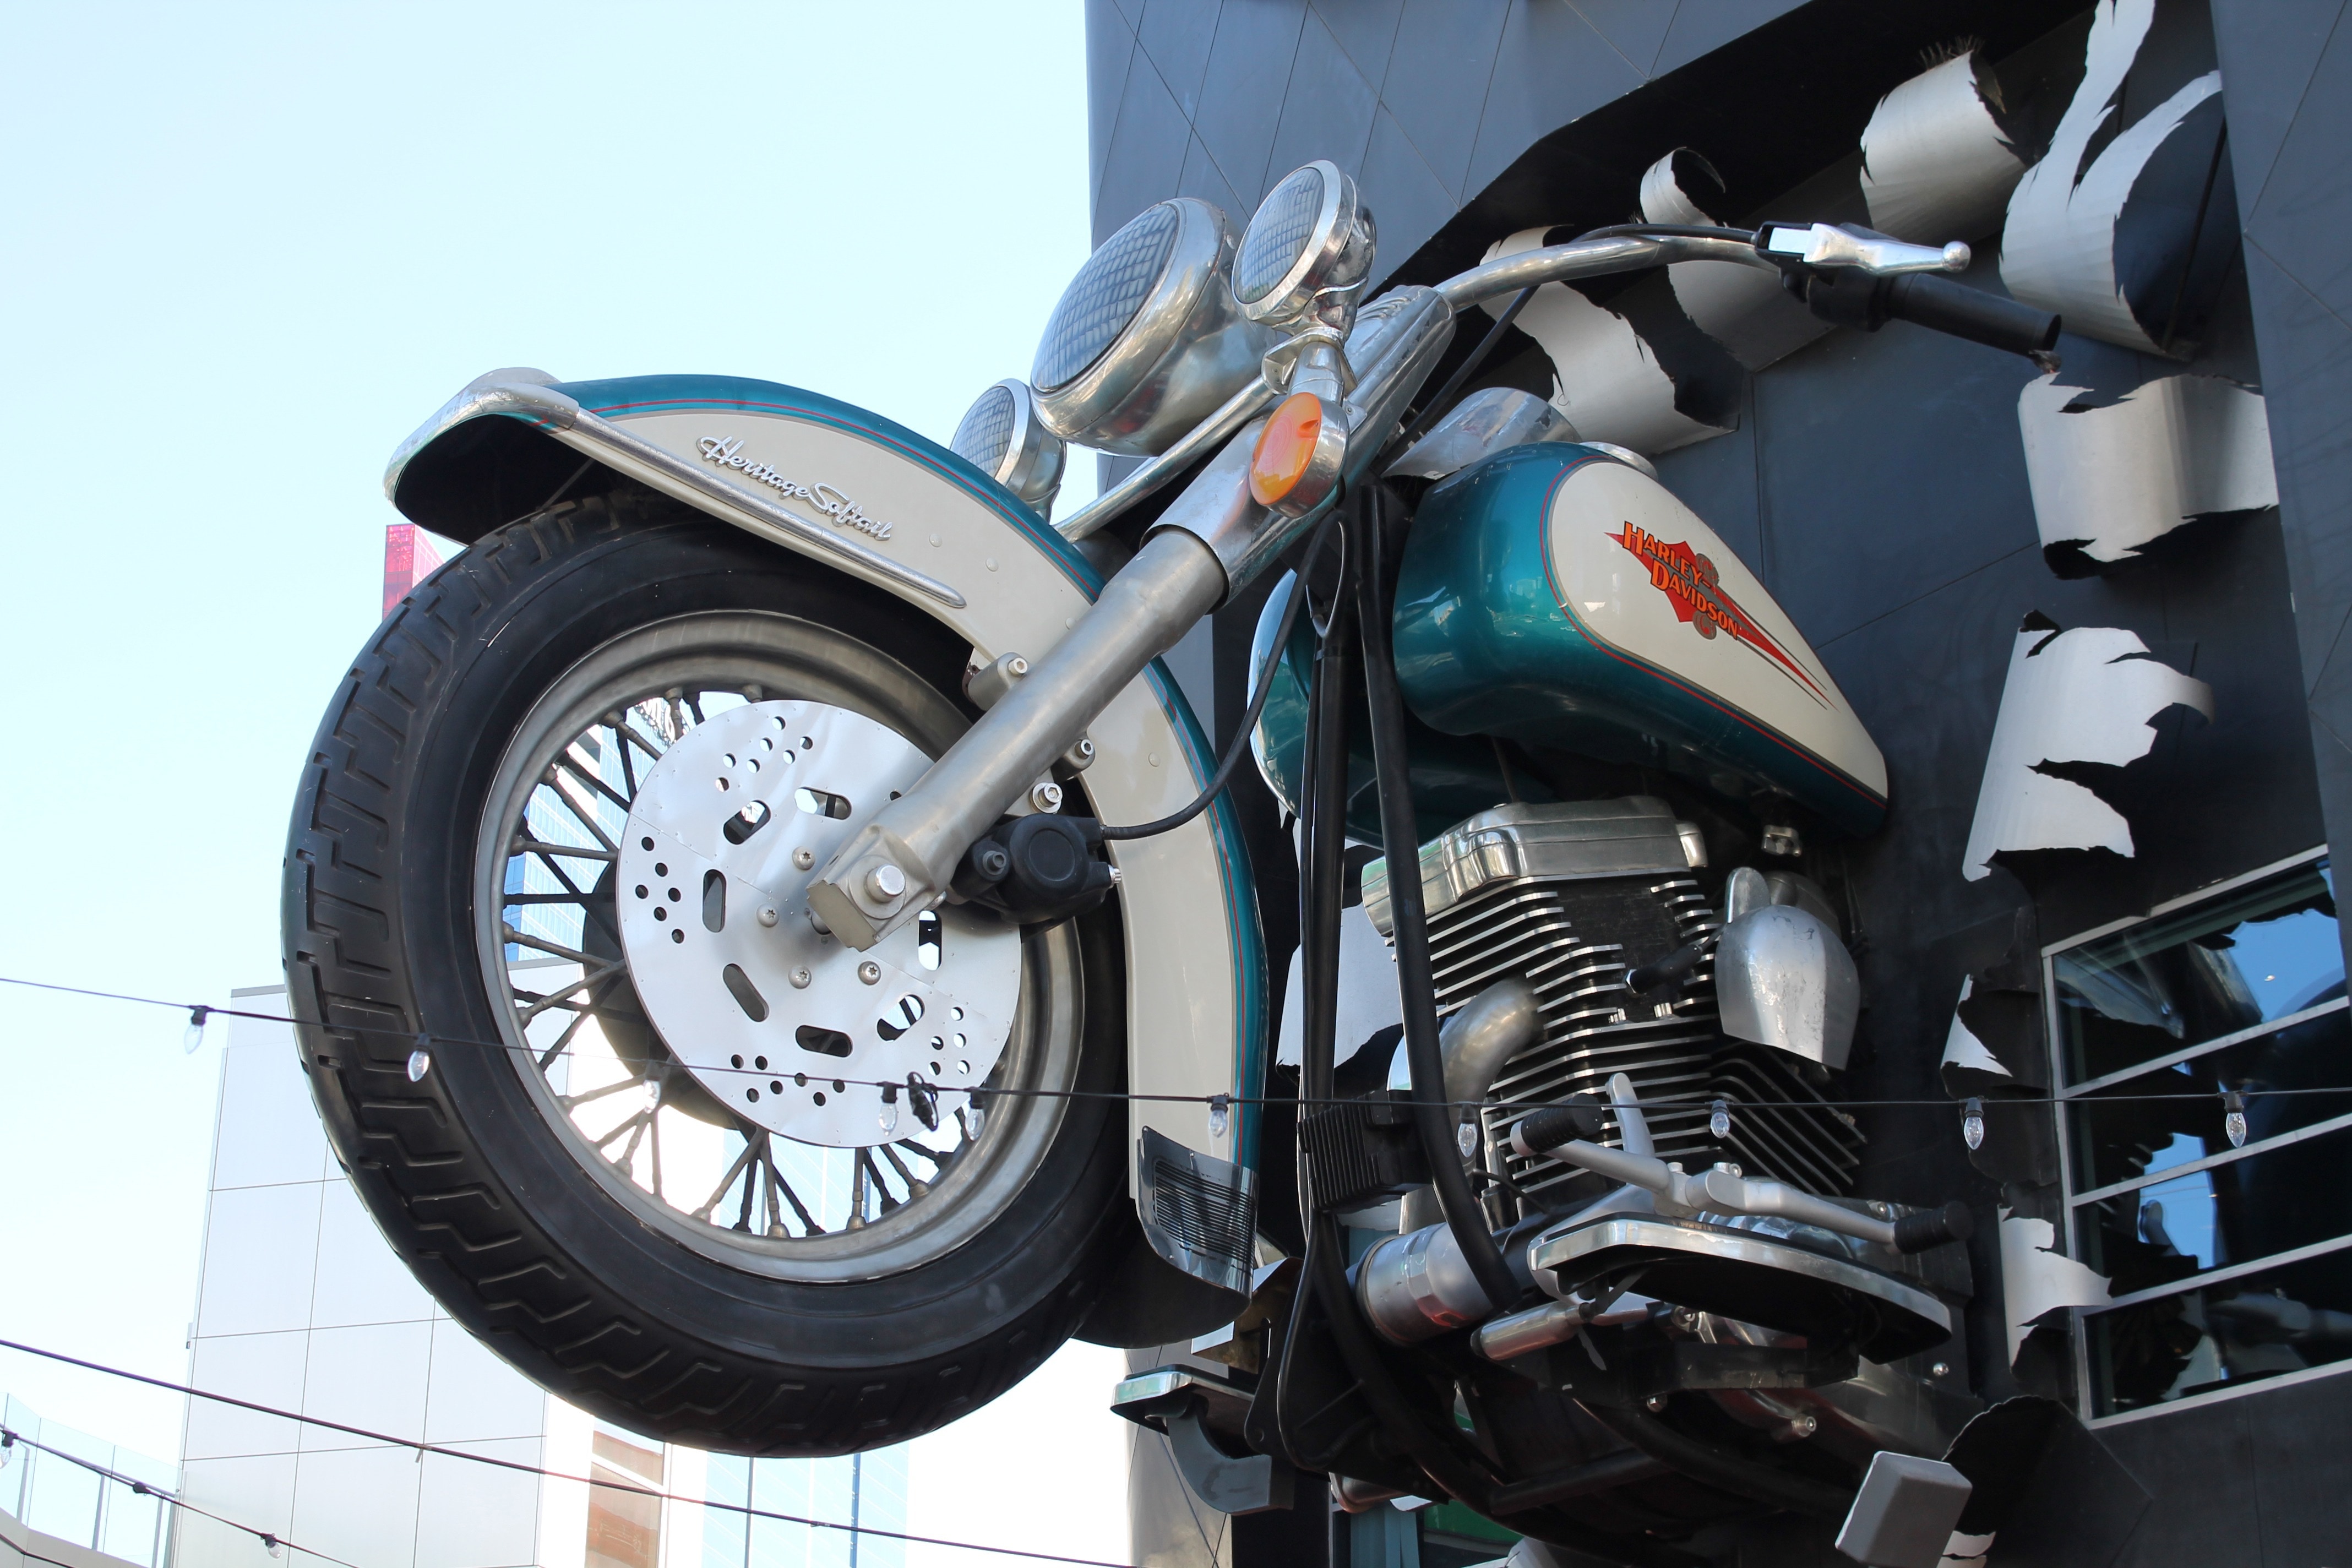 mounted harley davidson cruiser motorcycle